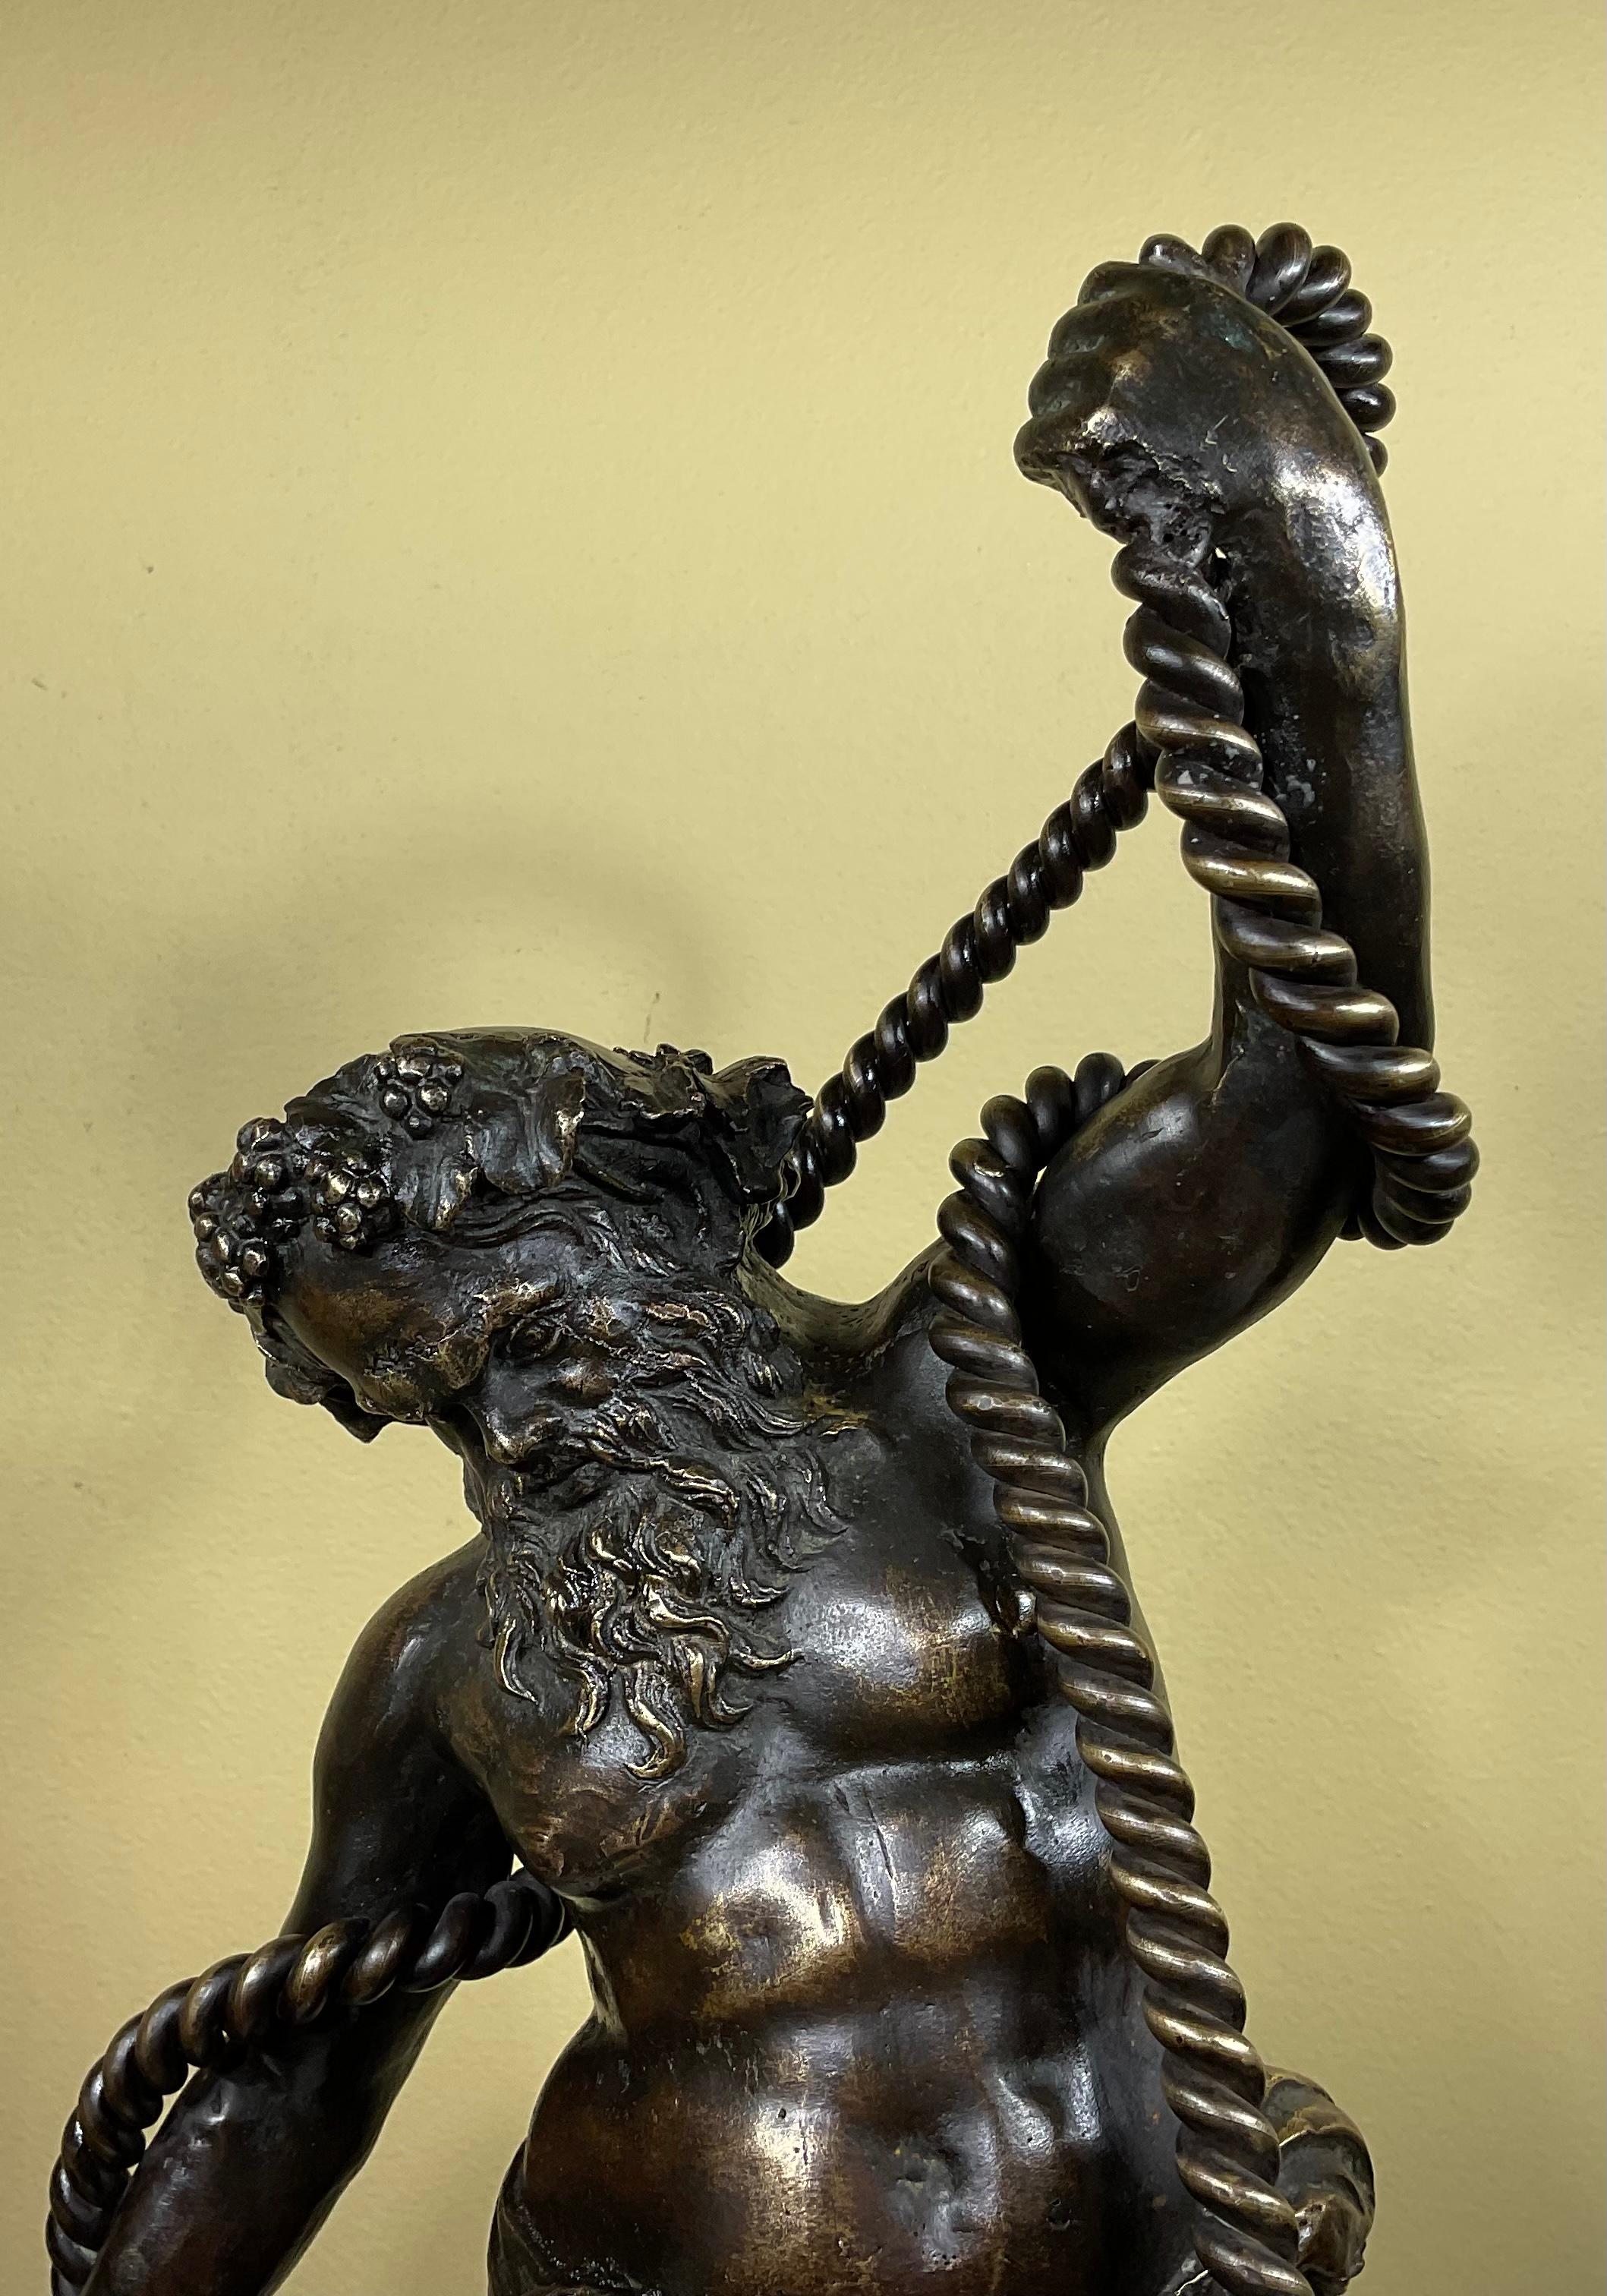 Bronzeskulptur von Samson, der versucht, sich von der Kette zu befreien, als letzter Akt in der biblischen Geschichte von Samson und Delilah.
Großartige Mimik und lebendige Details.
Außergewöhnliches Kunstobjekt zum Ausstellen.
Nicht signiert.
 